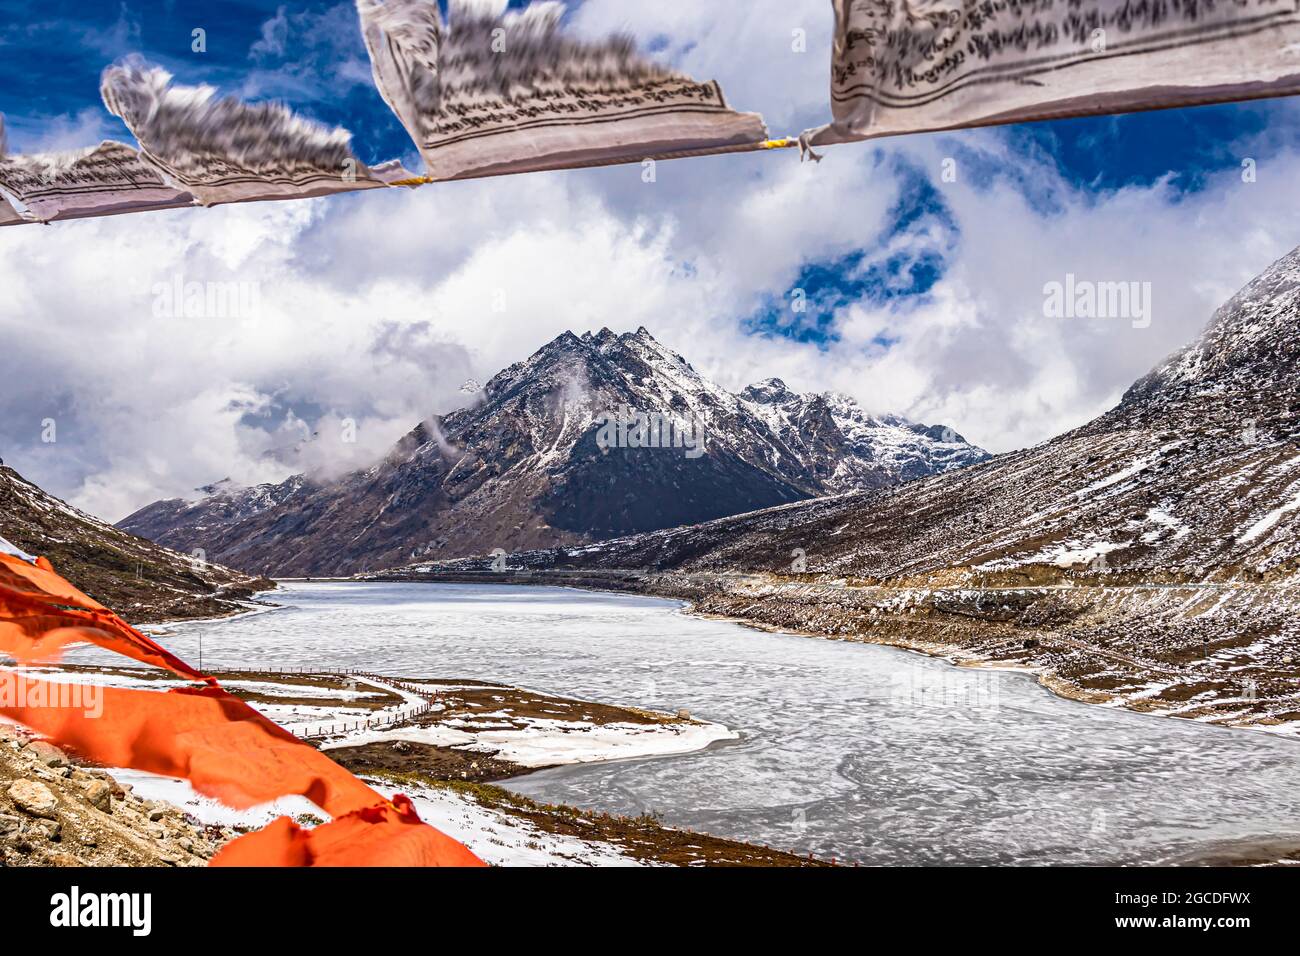 montagna con copertura della neve con cielo drammatico attraverso il blurred buddismo bandiere cornice al giorno l'immagine è presa al passo di sela tawang arunachal pradesh india. Foto Stock